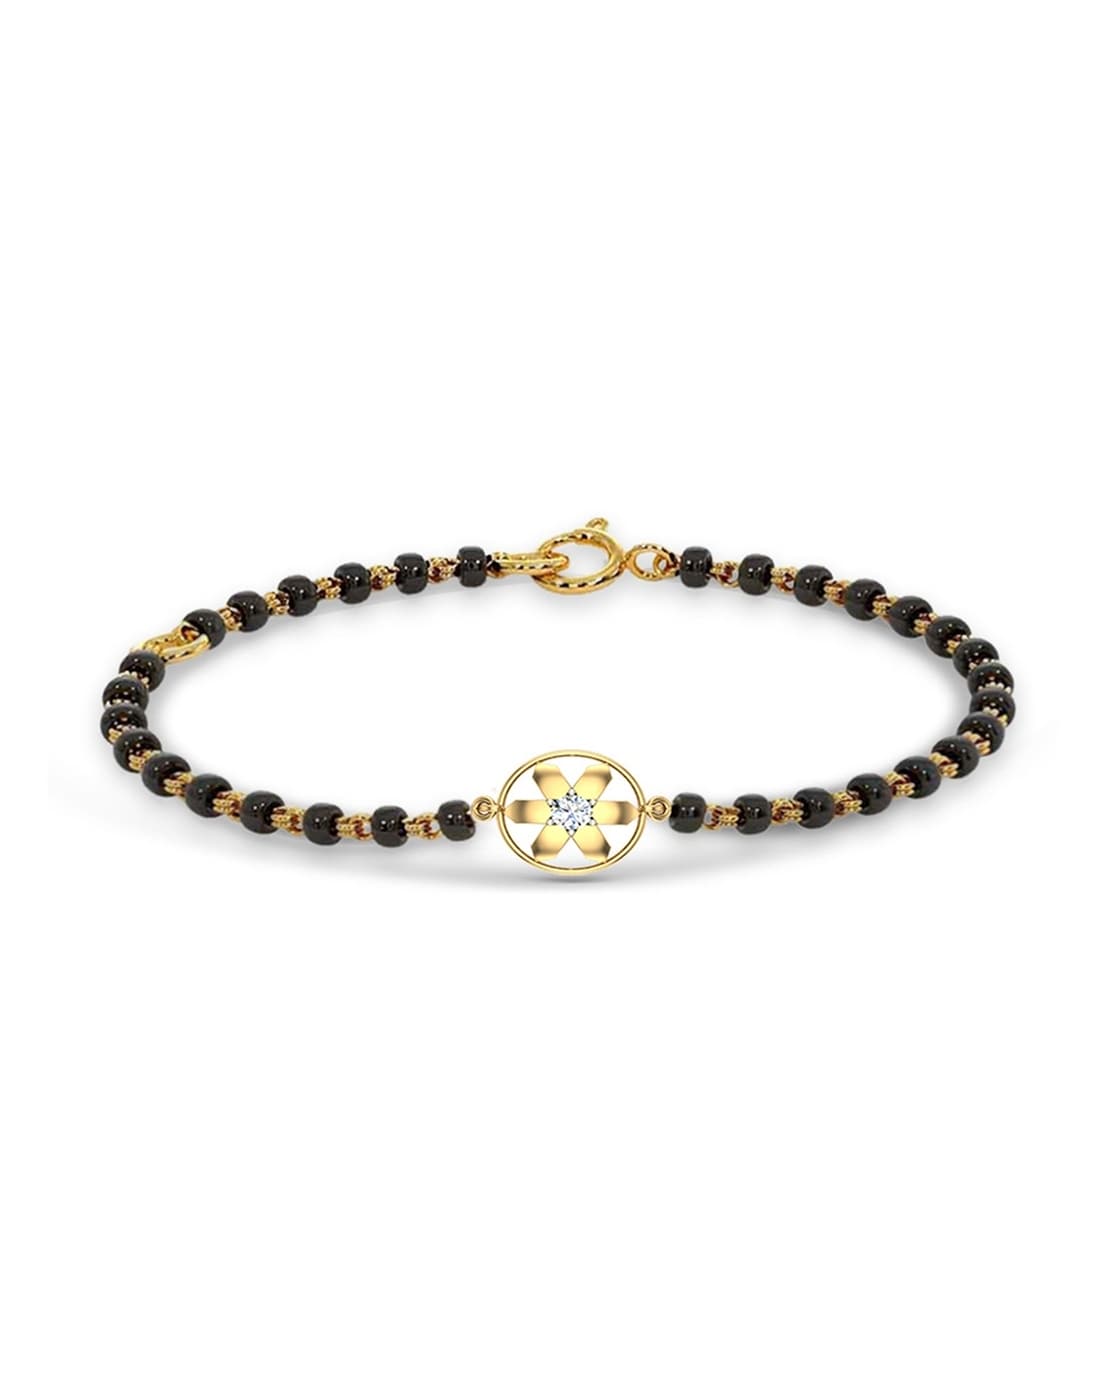 Buy Elegant Diamond Bracelet in 14KT Yellow Gold Online | ORRA